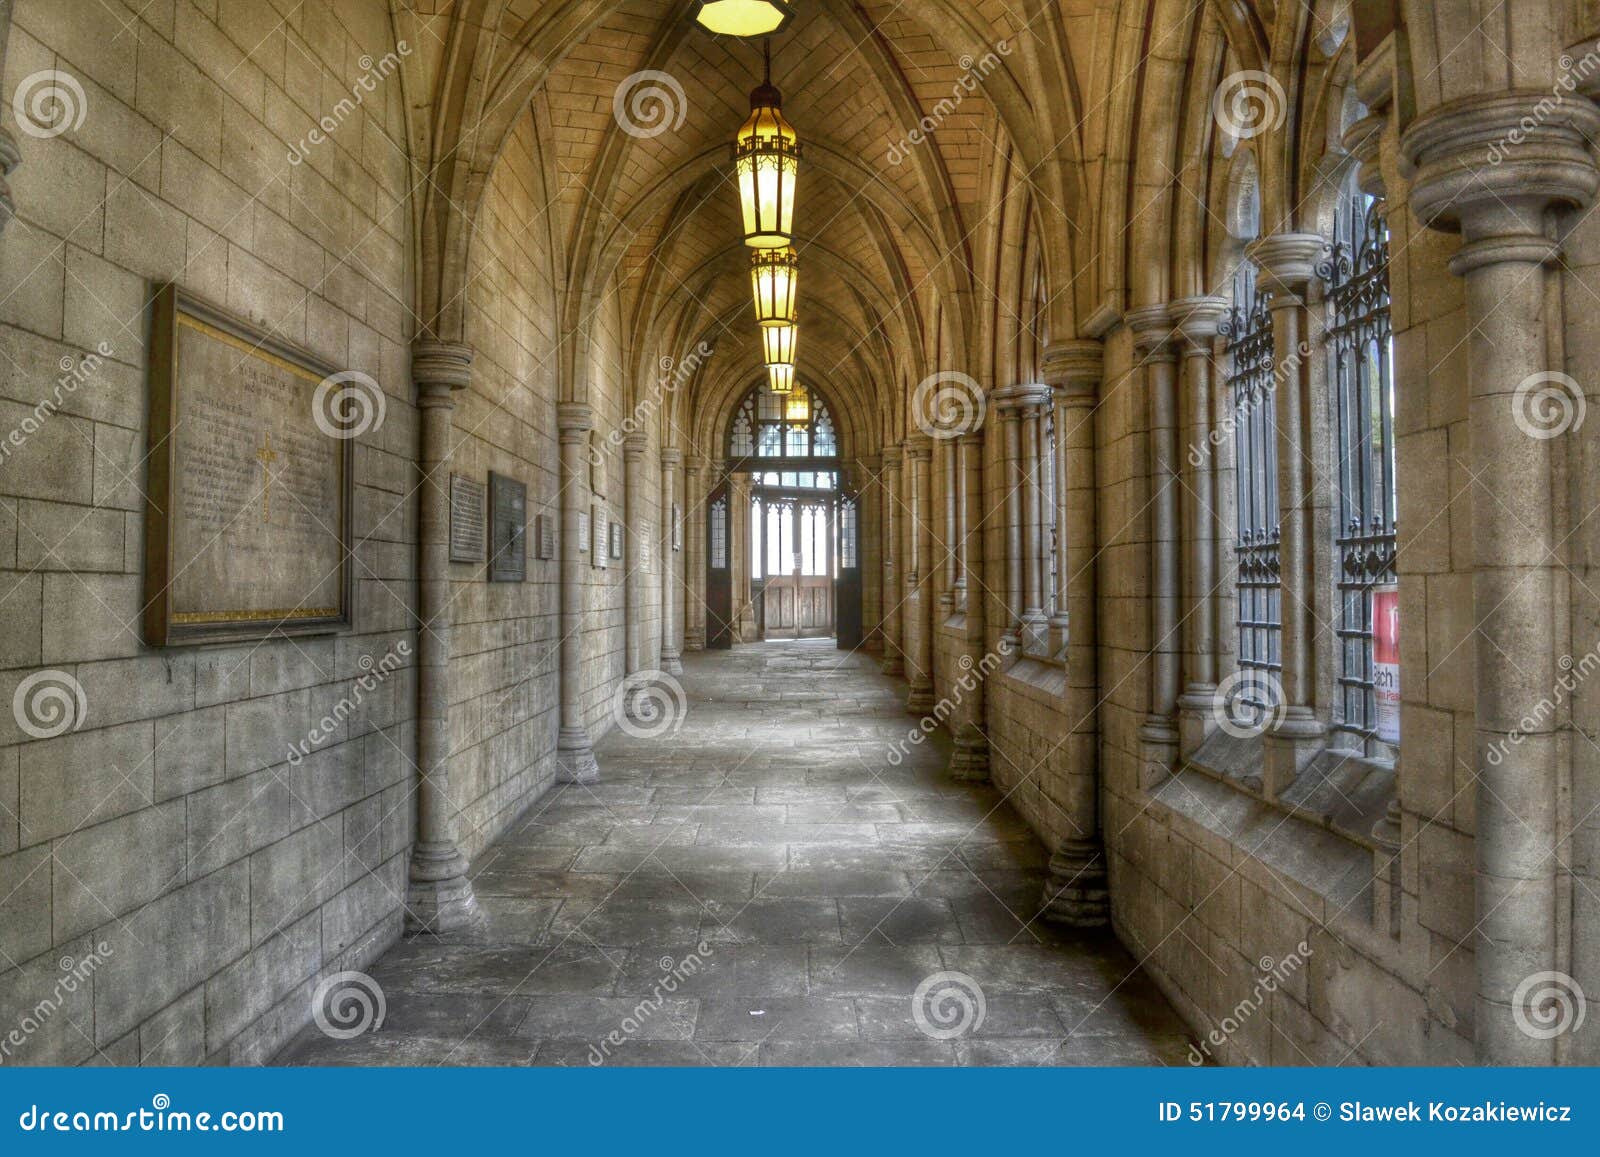 gothic church passageway